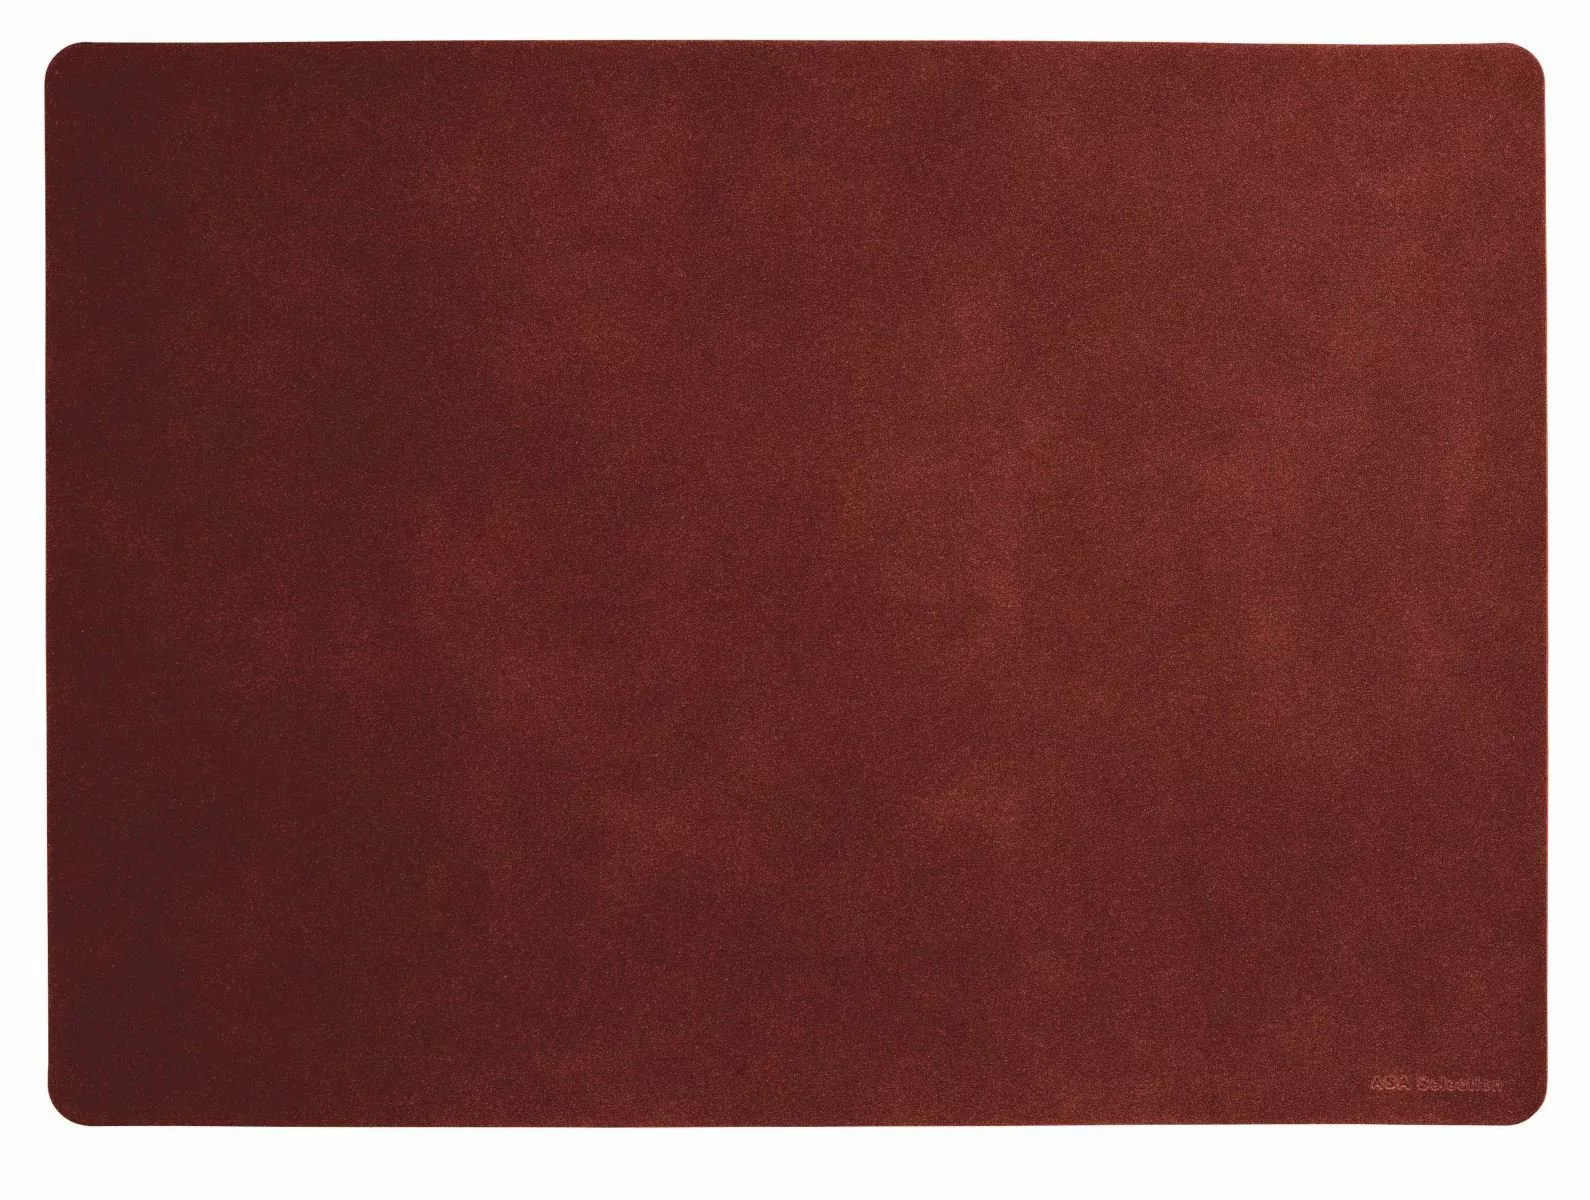 ASA Tischsets Tischset soft leather red earth 46 x 33 cm (rot) günstig online kaufen